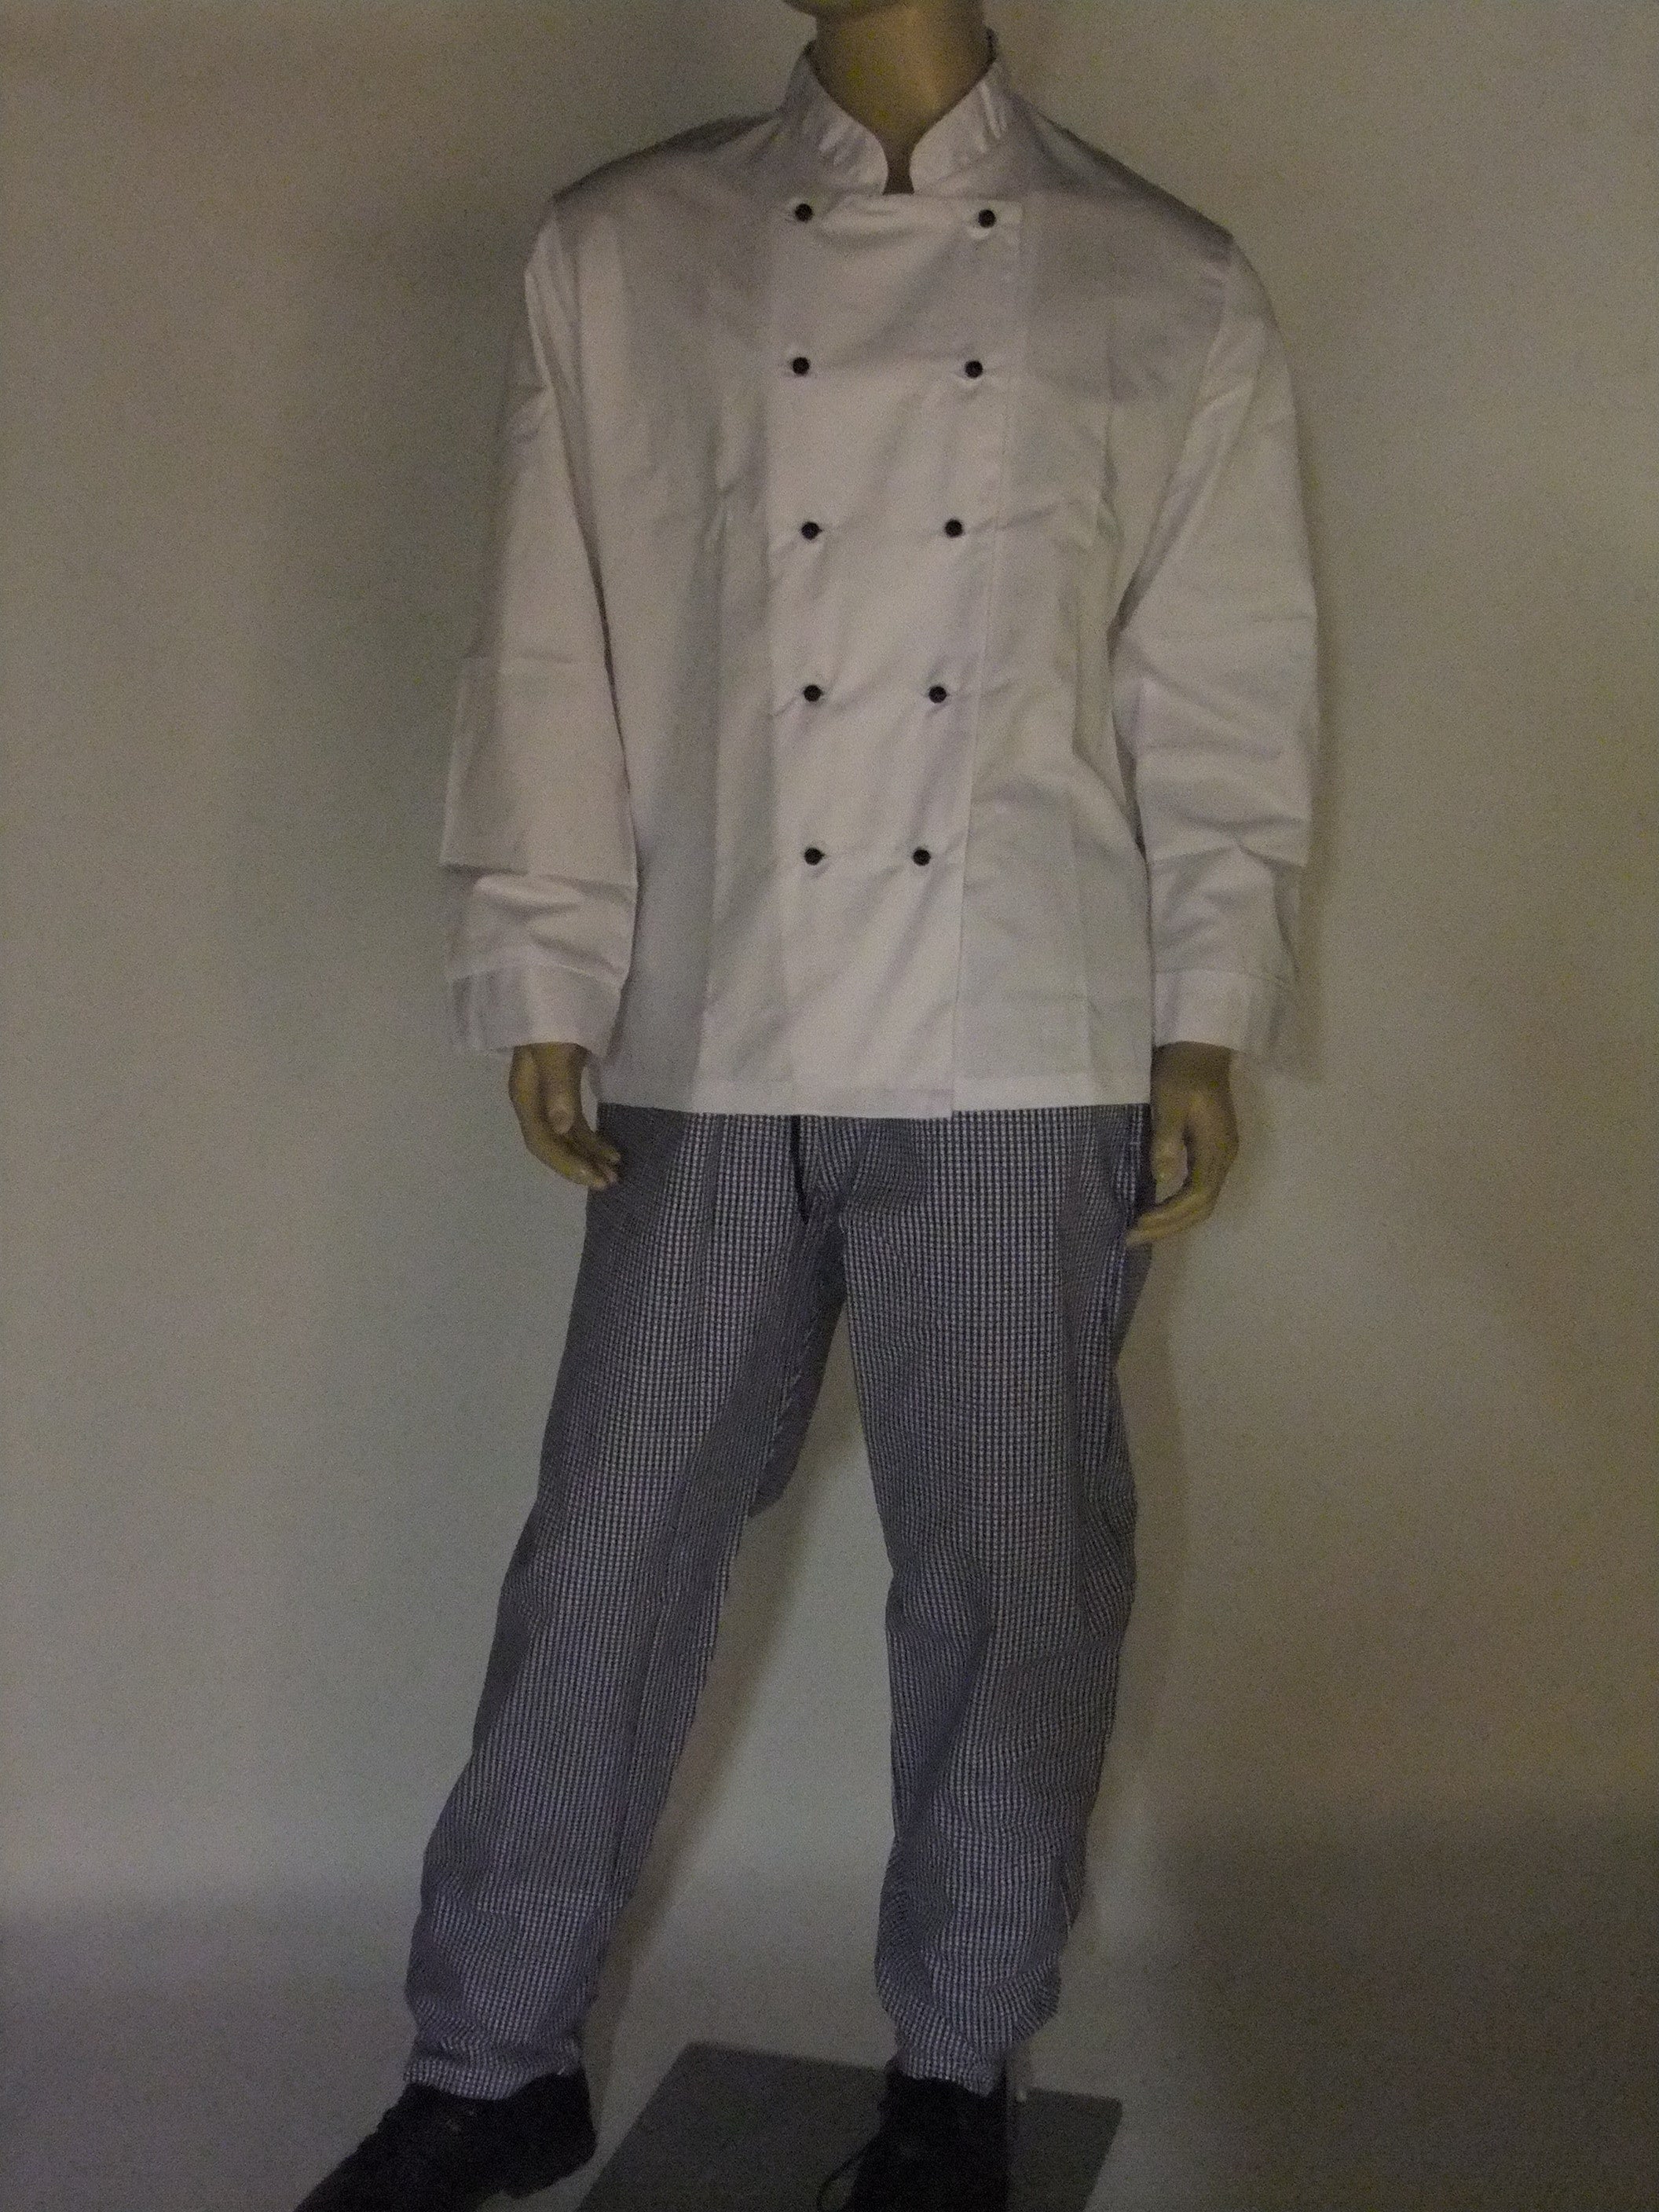 Genuine Chef suit.